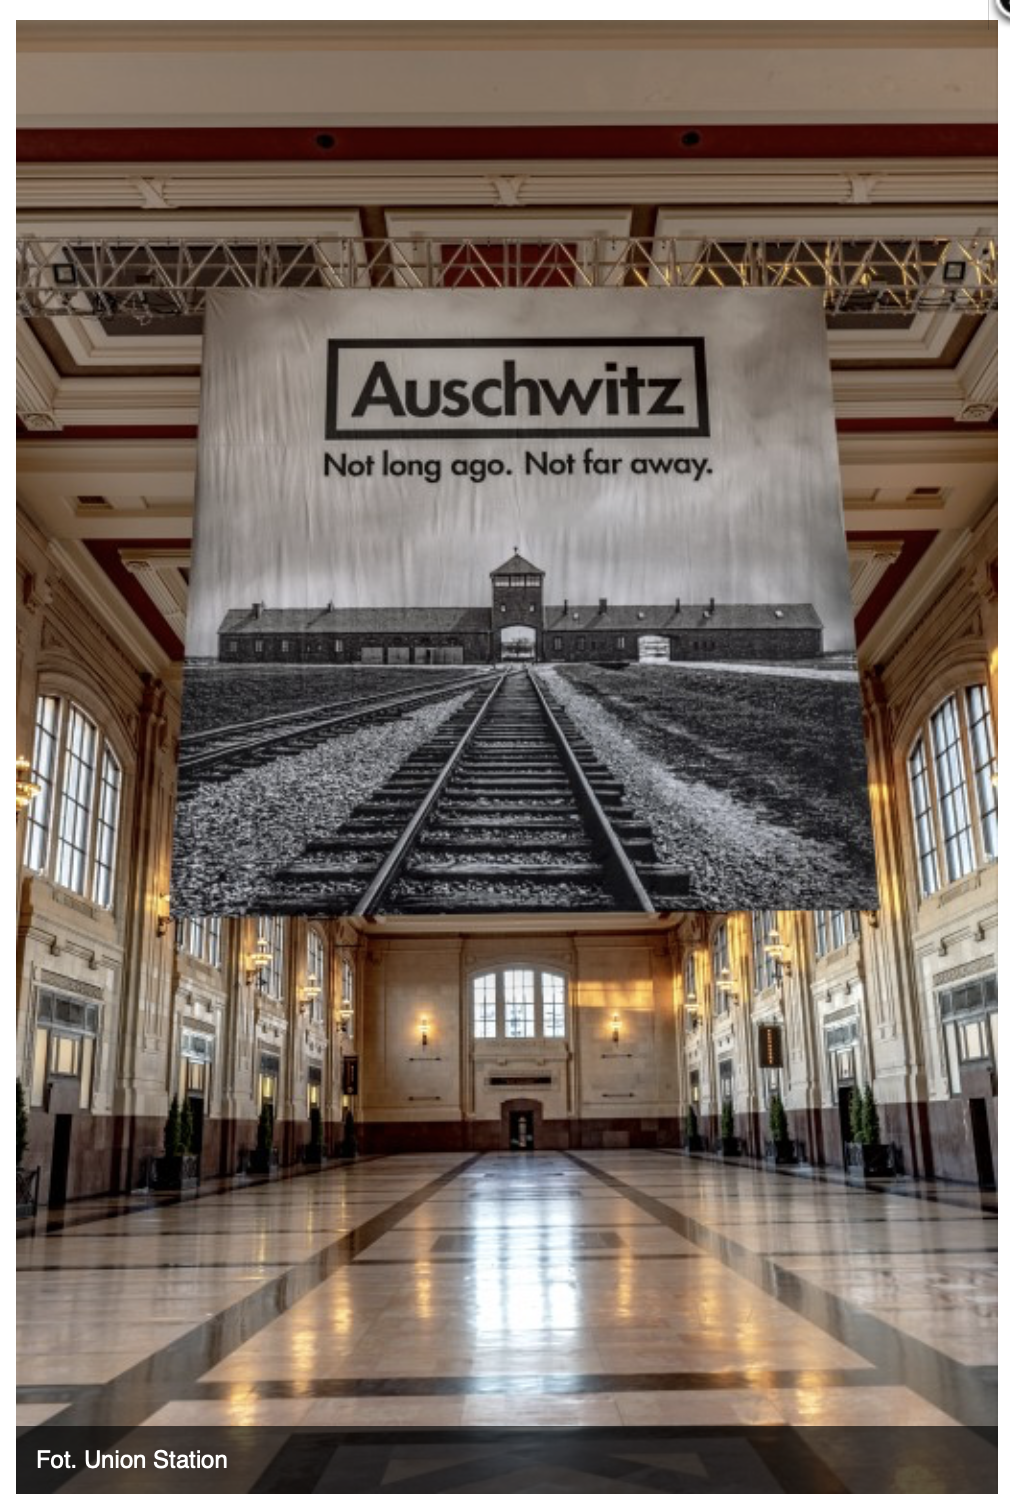 Wystawa Auschwitz Nie tak dawno Nie tak daleko w Kansas City od 14 czerwca 2021 r